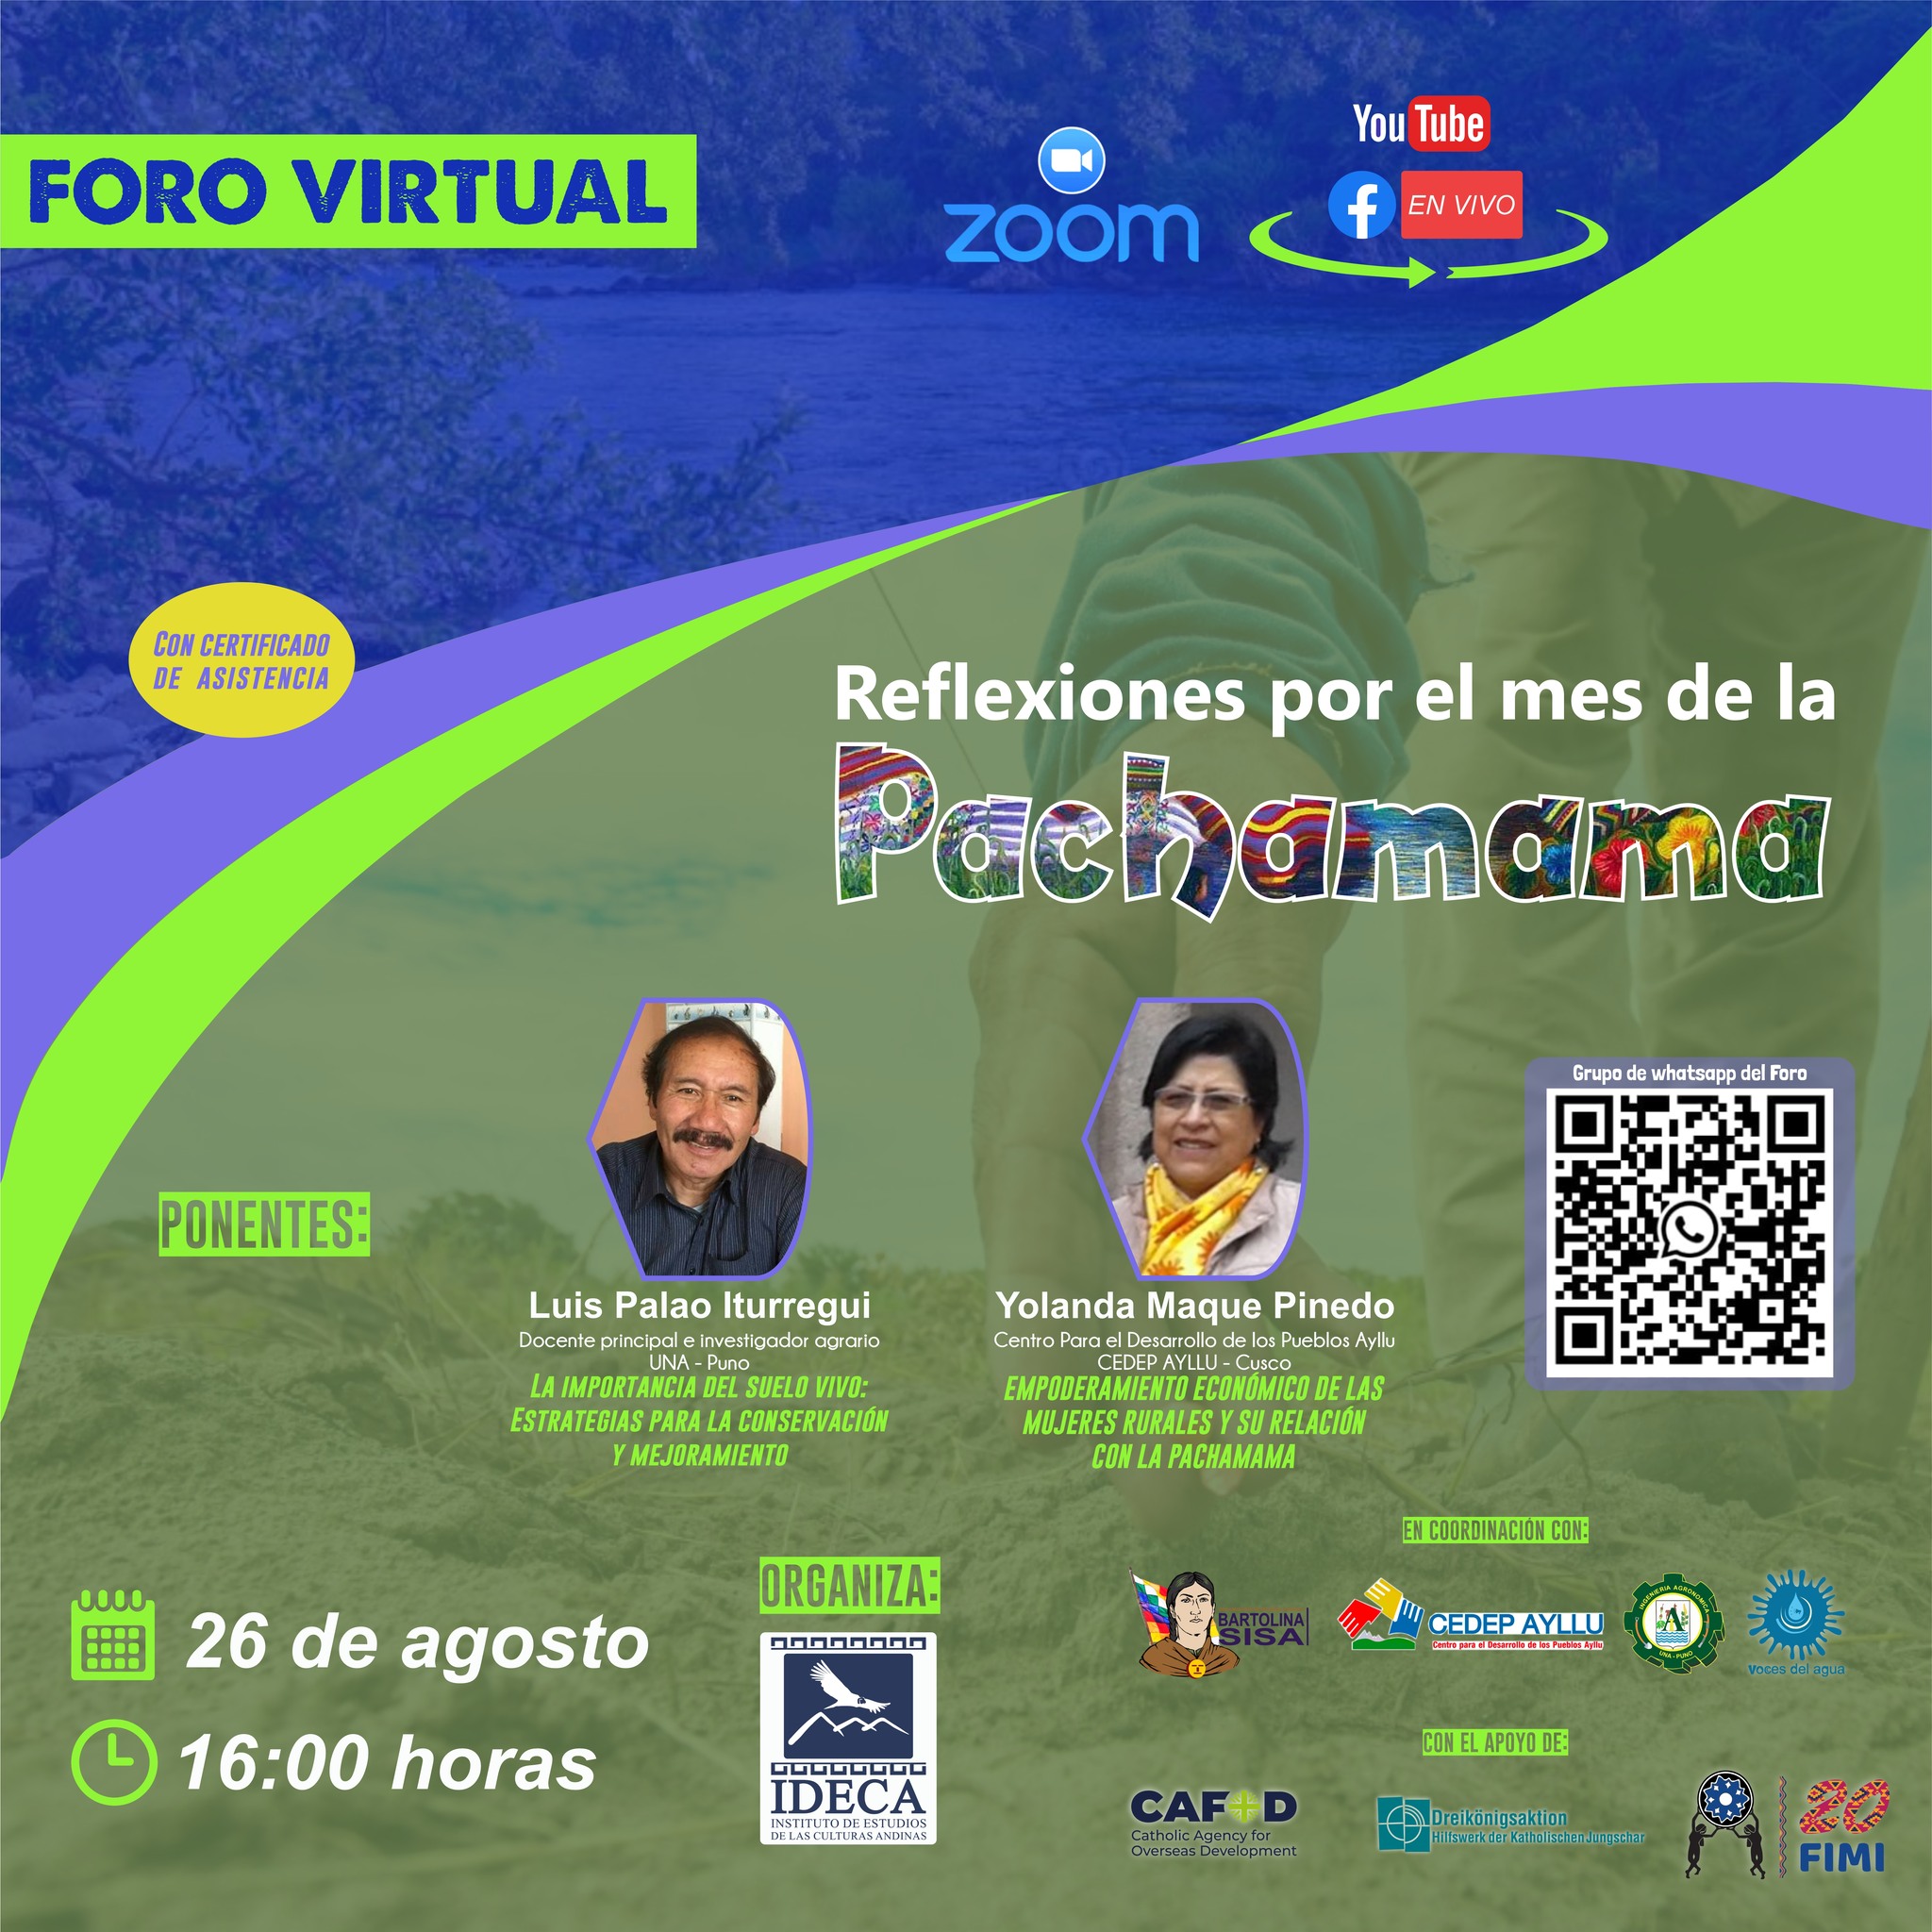 Foro virtual: Reflexiones por el mes de la Pachamama